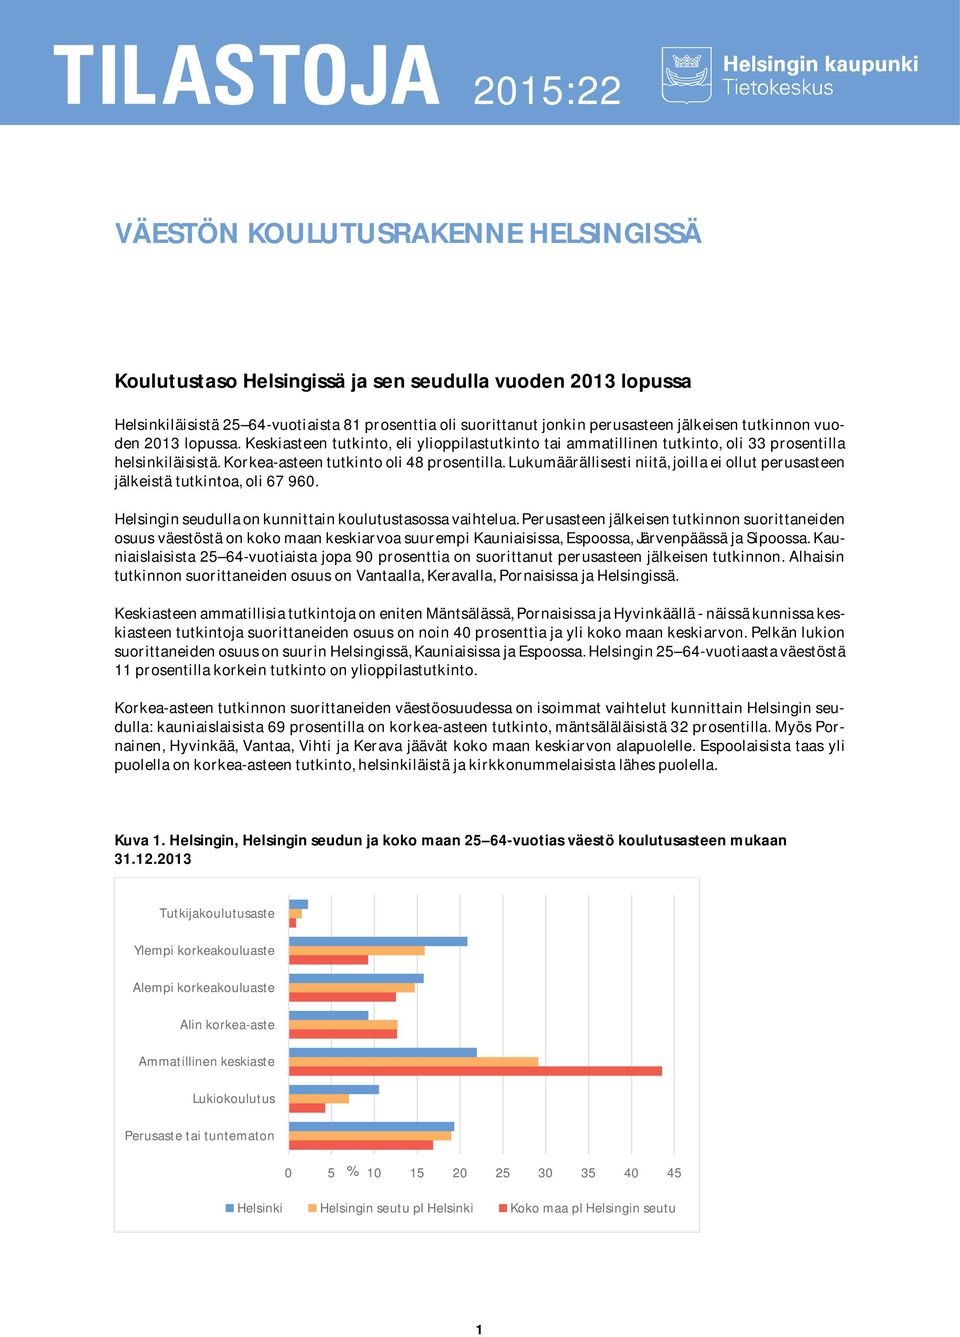 Lukumäärällisesti niitä, joilla ei ollut perusasteen jälkeistä tutkintoa, oli 67 960. Helsingin seudulla on kunnittain koulutustasossa vaihtelua.